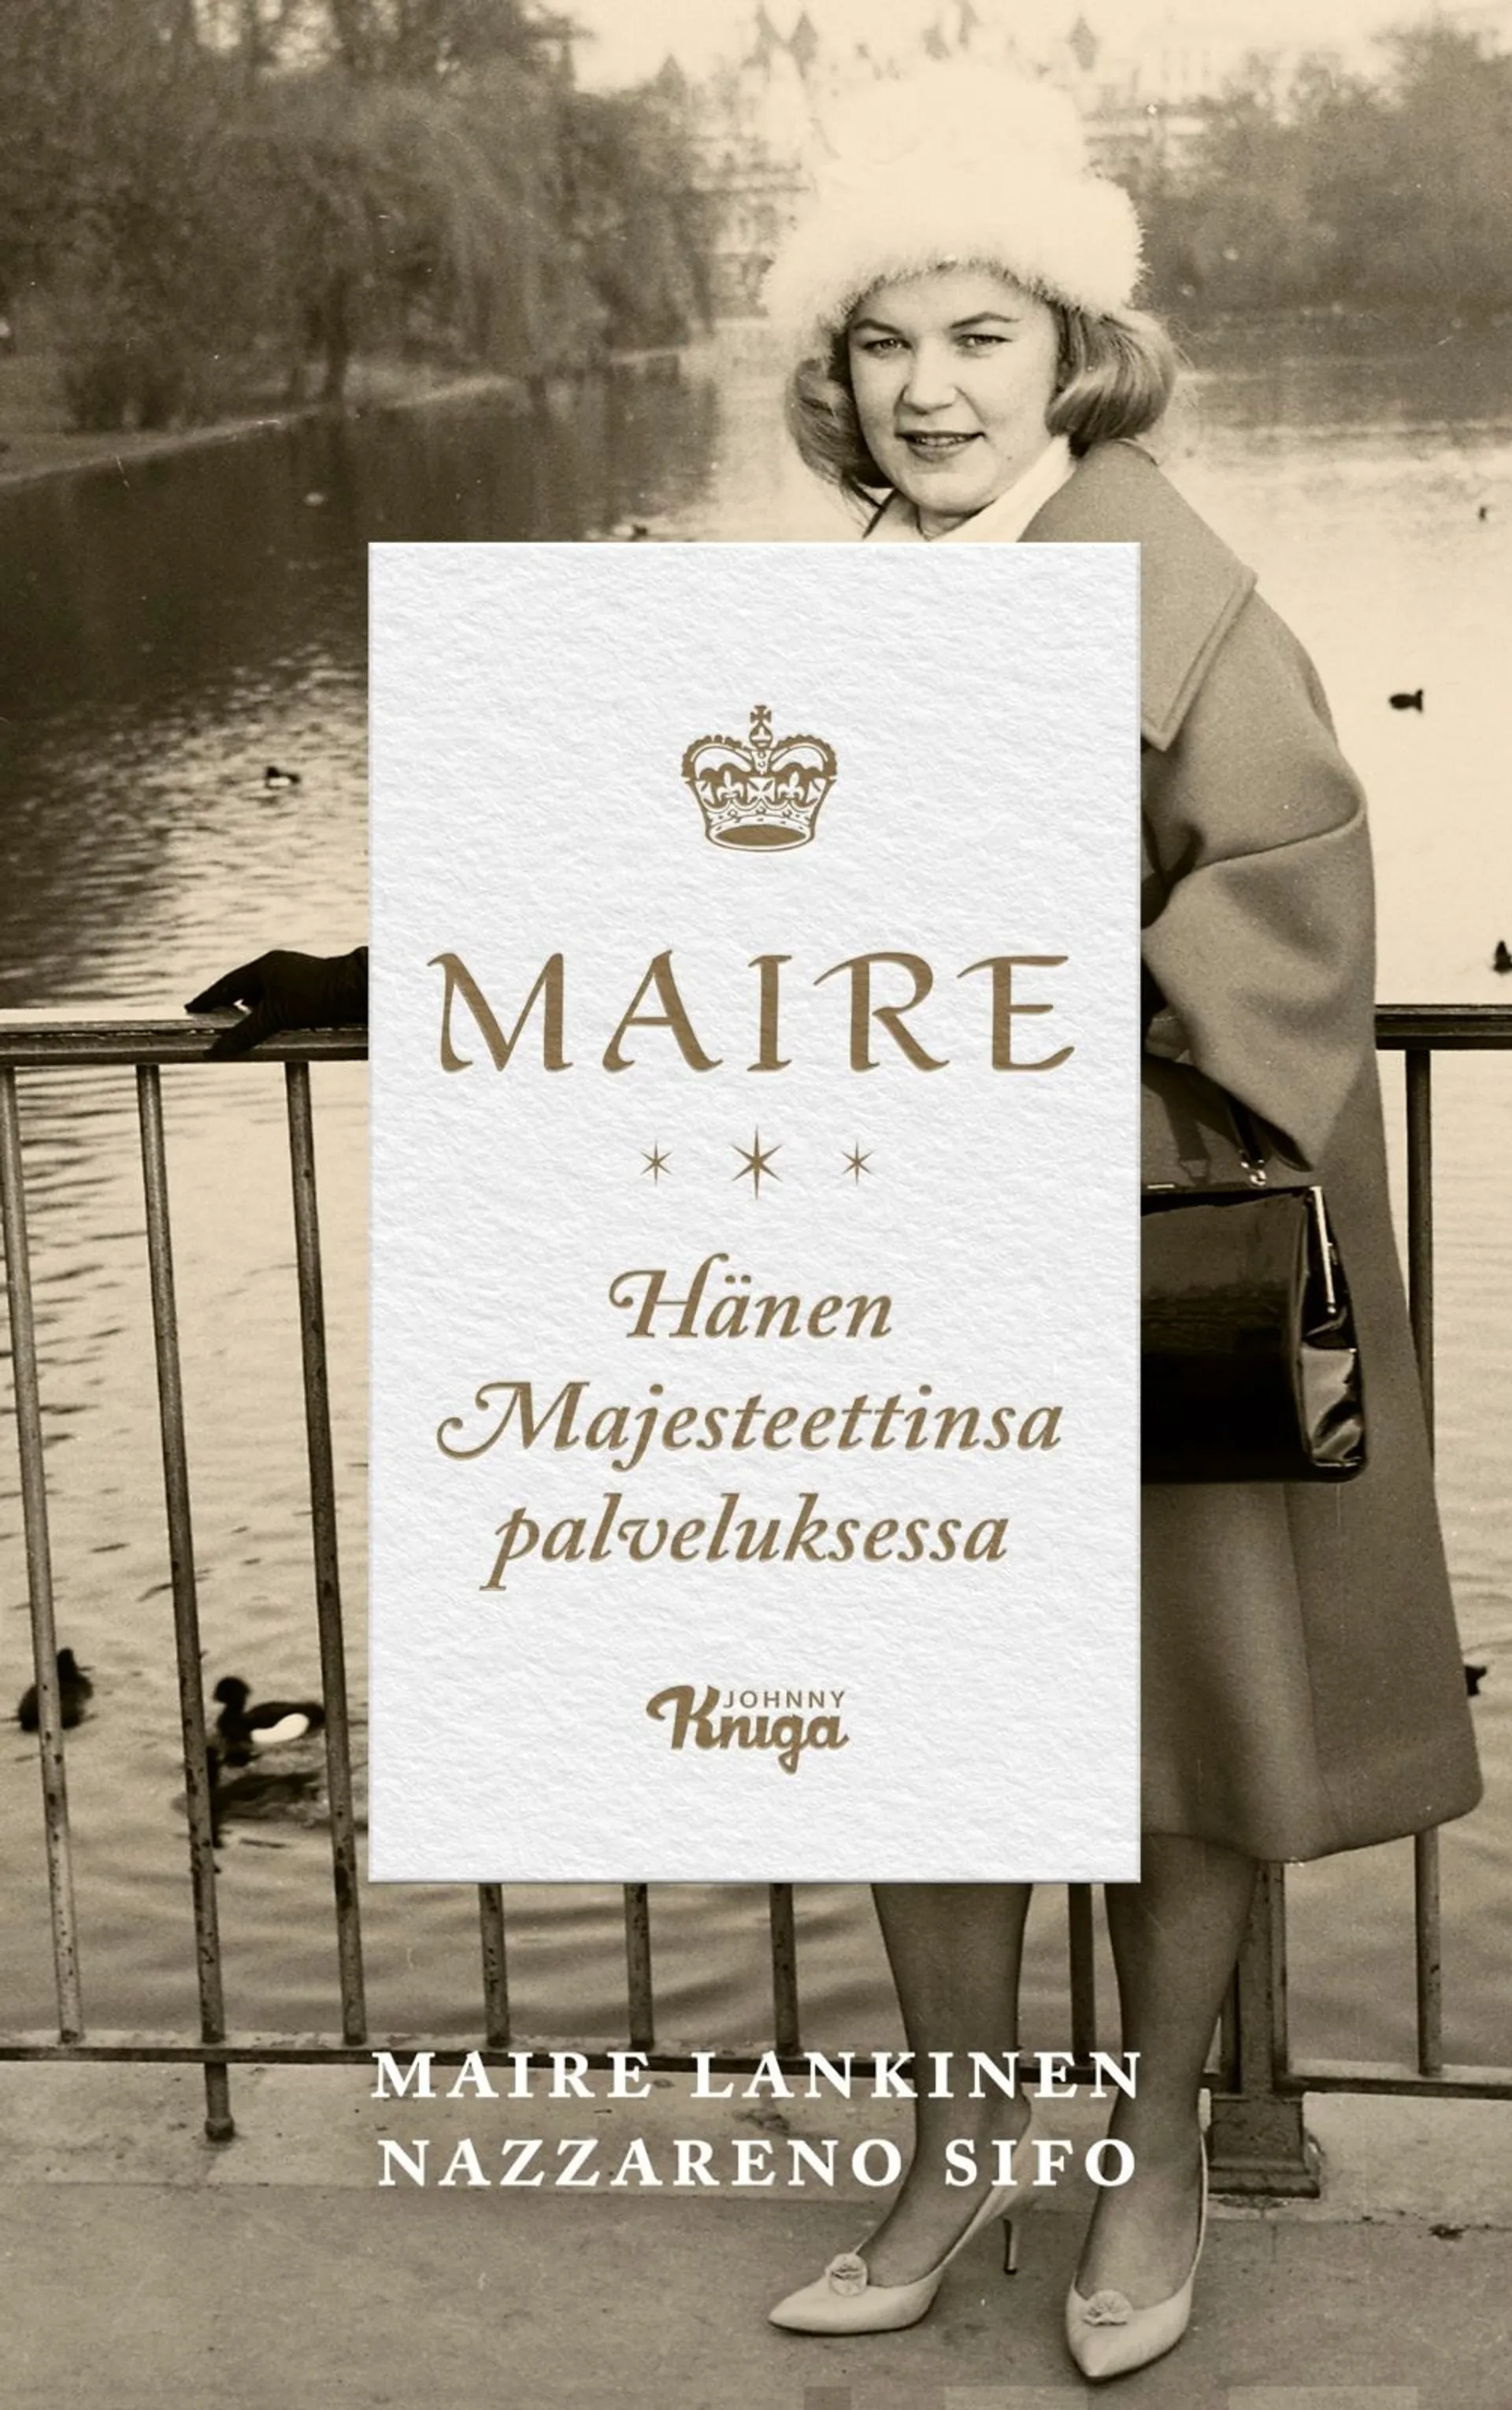 Lankinen, Maire – Hänen Majesteettinsa palveluksessa